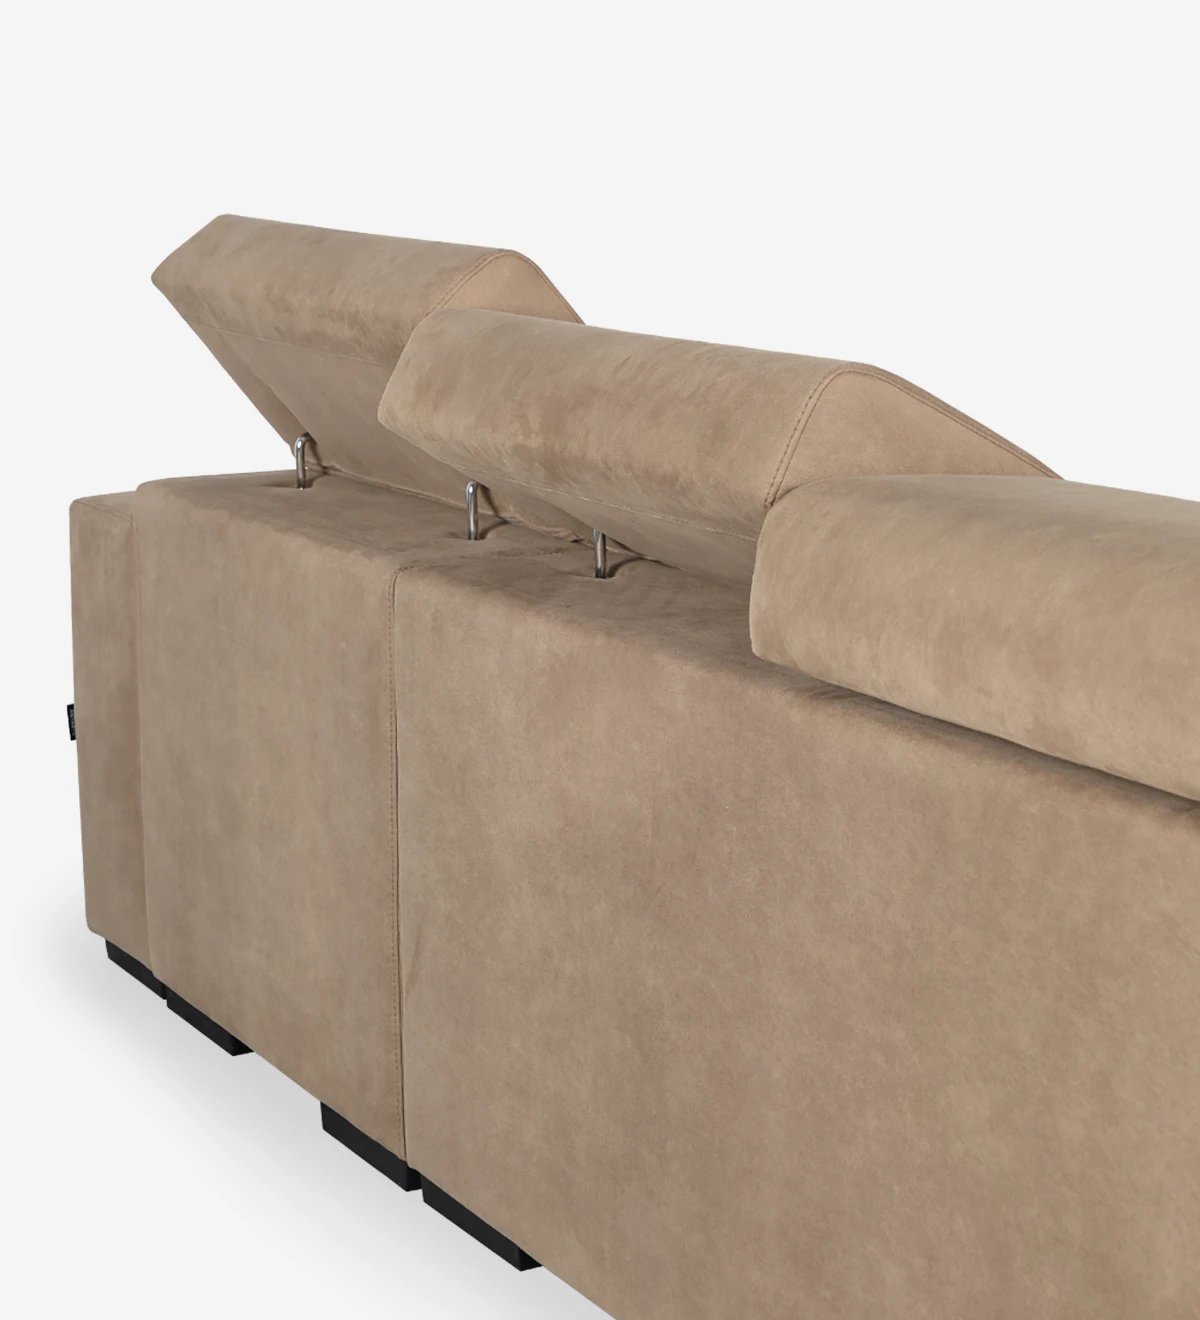 Canapé 2 places avec chaise longue réversible, revêtu de tissu, avec têtières inclinables, sièges coulissants et rangement sur la chaise longue.